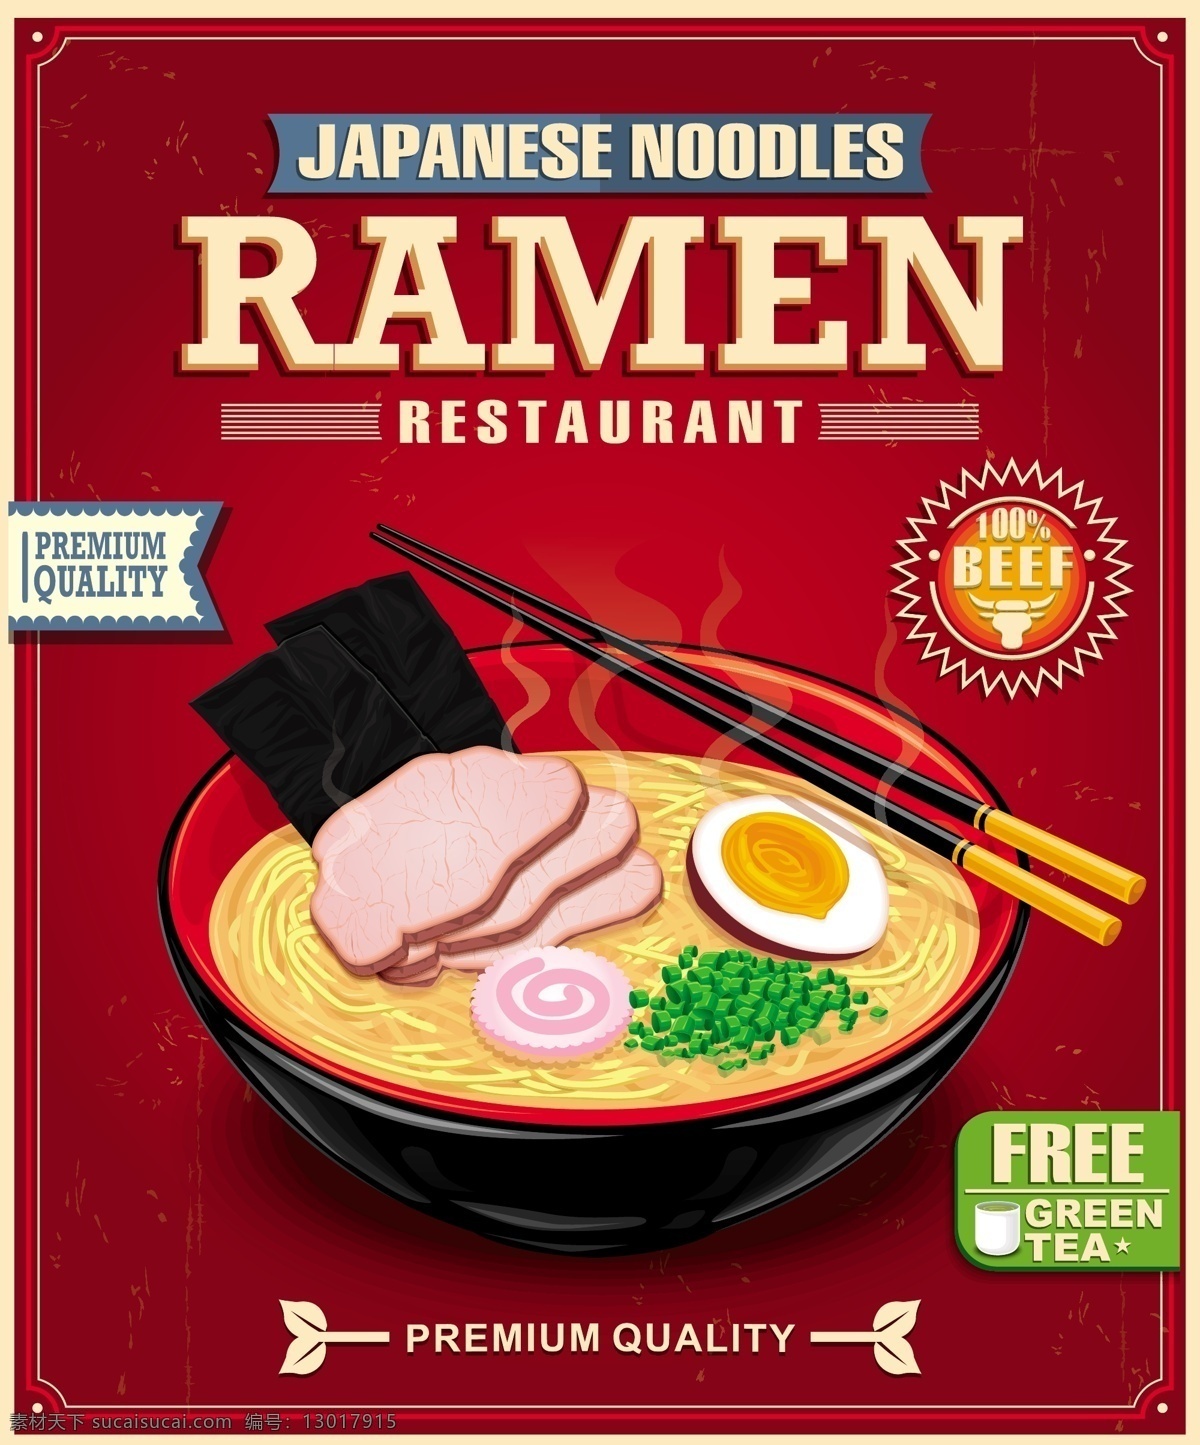 创意 日式 拉 面馆 海报 矢量 eps格式 含 预览 图 拉面 午餐肉 海苔 鸡蛋 餐馆 餐饮 日本料理 矢量图 红色